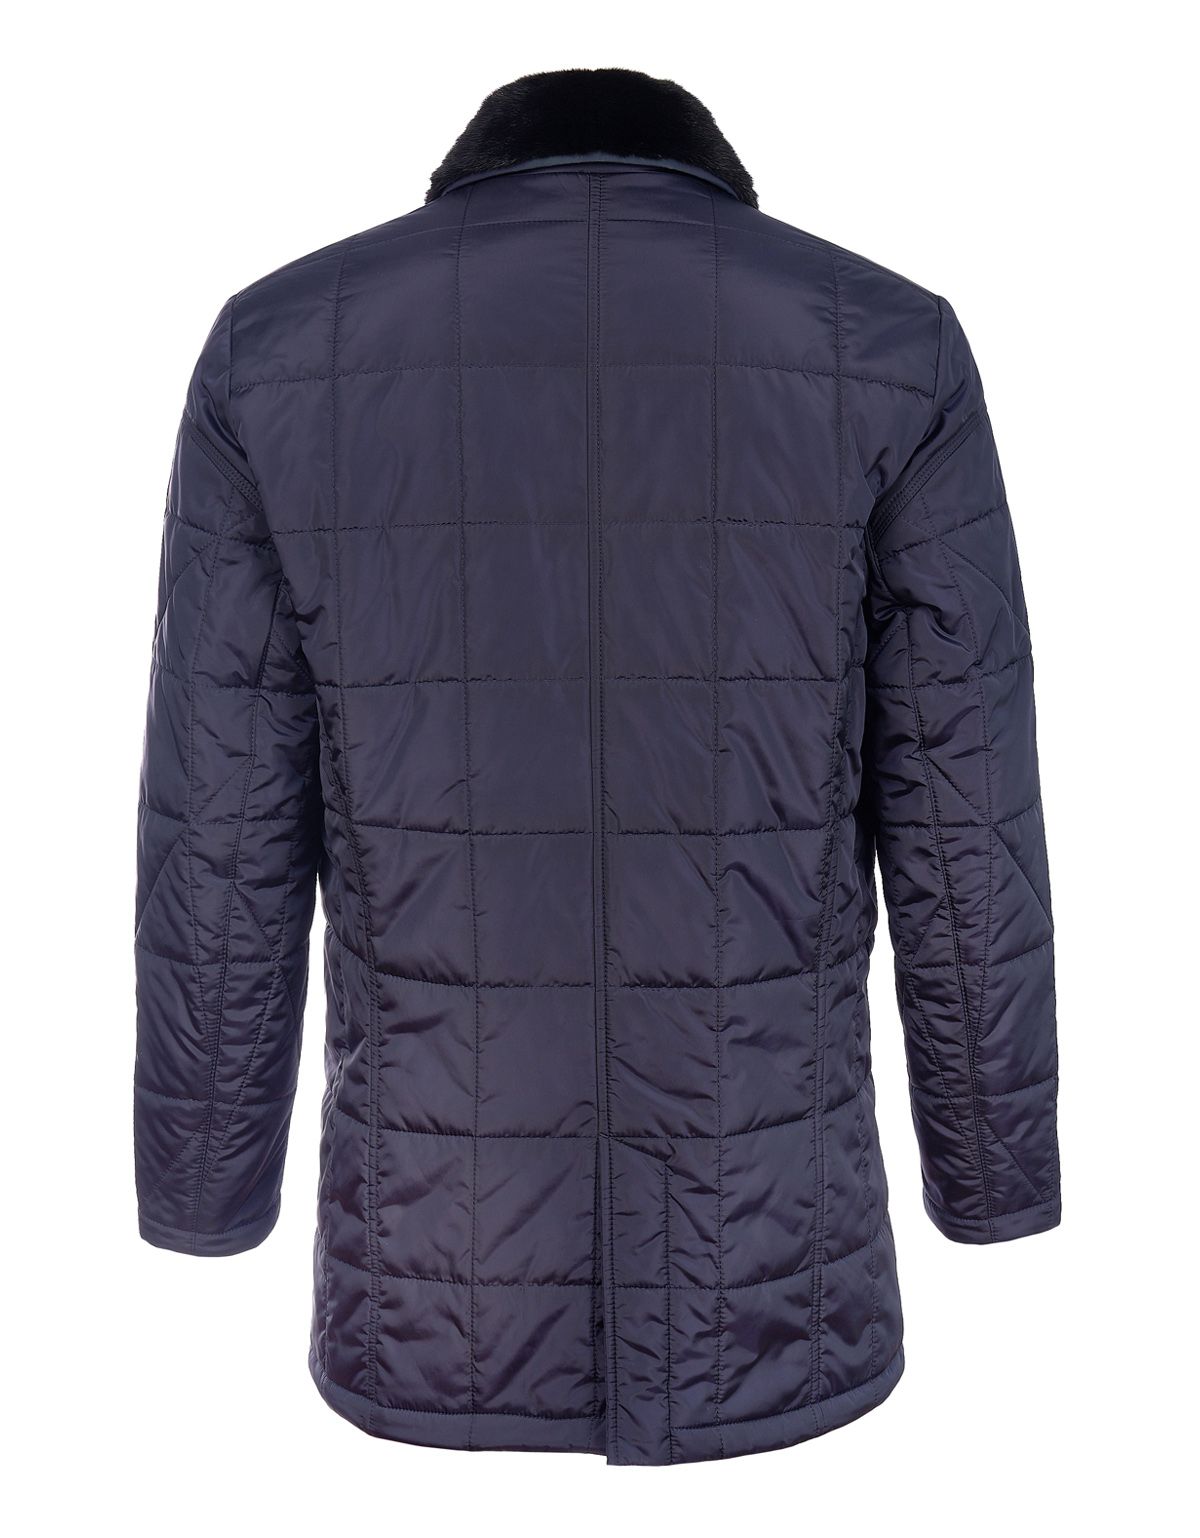 Куртка мужская MEUCCI утеплённая с меховым воротником | купить в интернет-магазине Olymp-Men